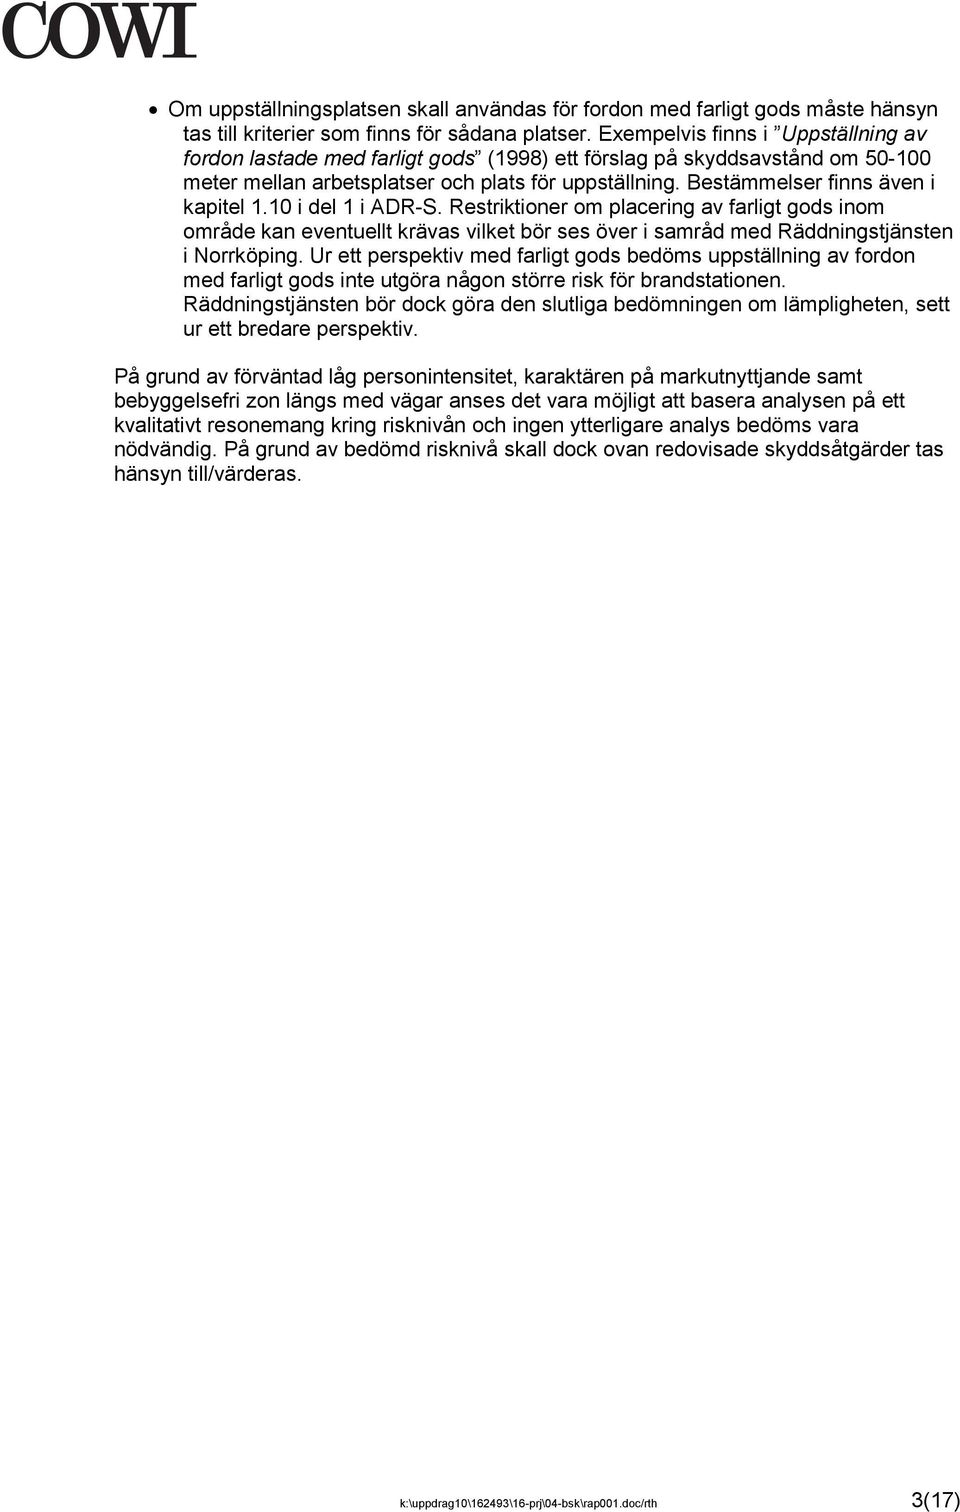 Bestämmelser finns även i kapitel 1.10 i del 1 i ADR-S. Restriktioner om placering av farligt gods inom område kan eventuellt krävas vilket bör ses över i samråd med Räddningstjänsten i Norrköping.